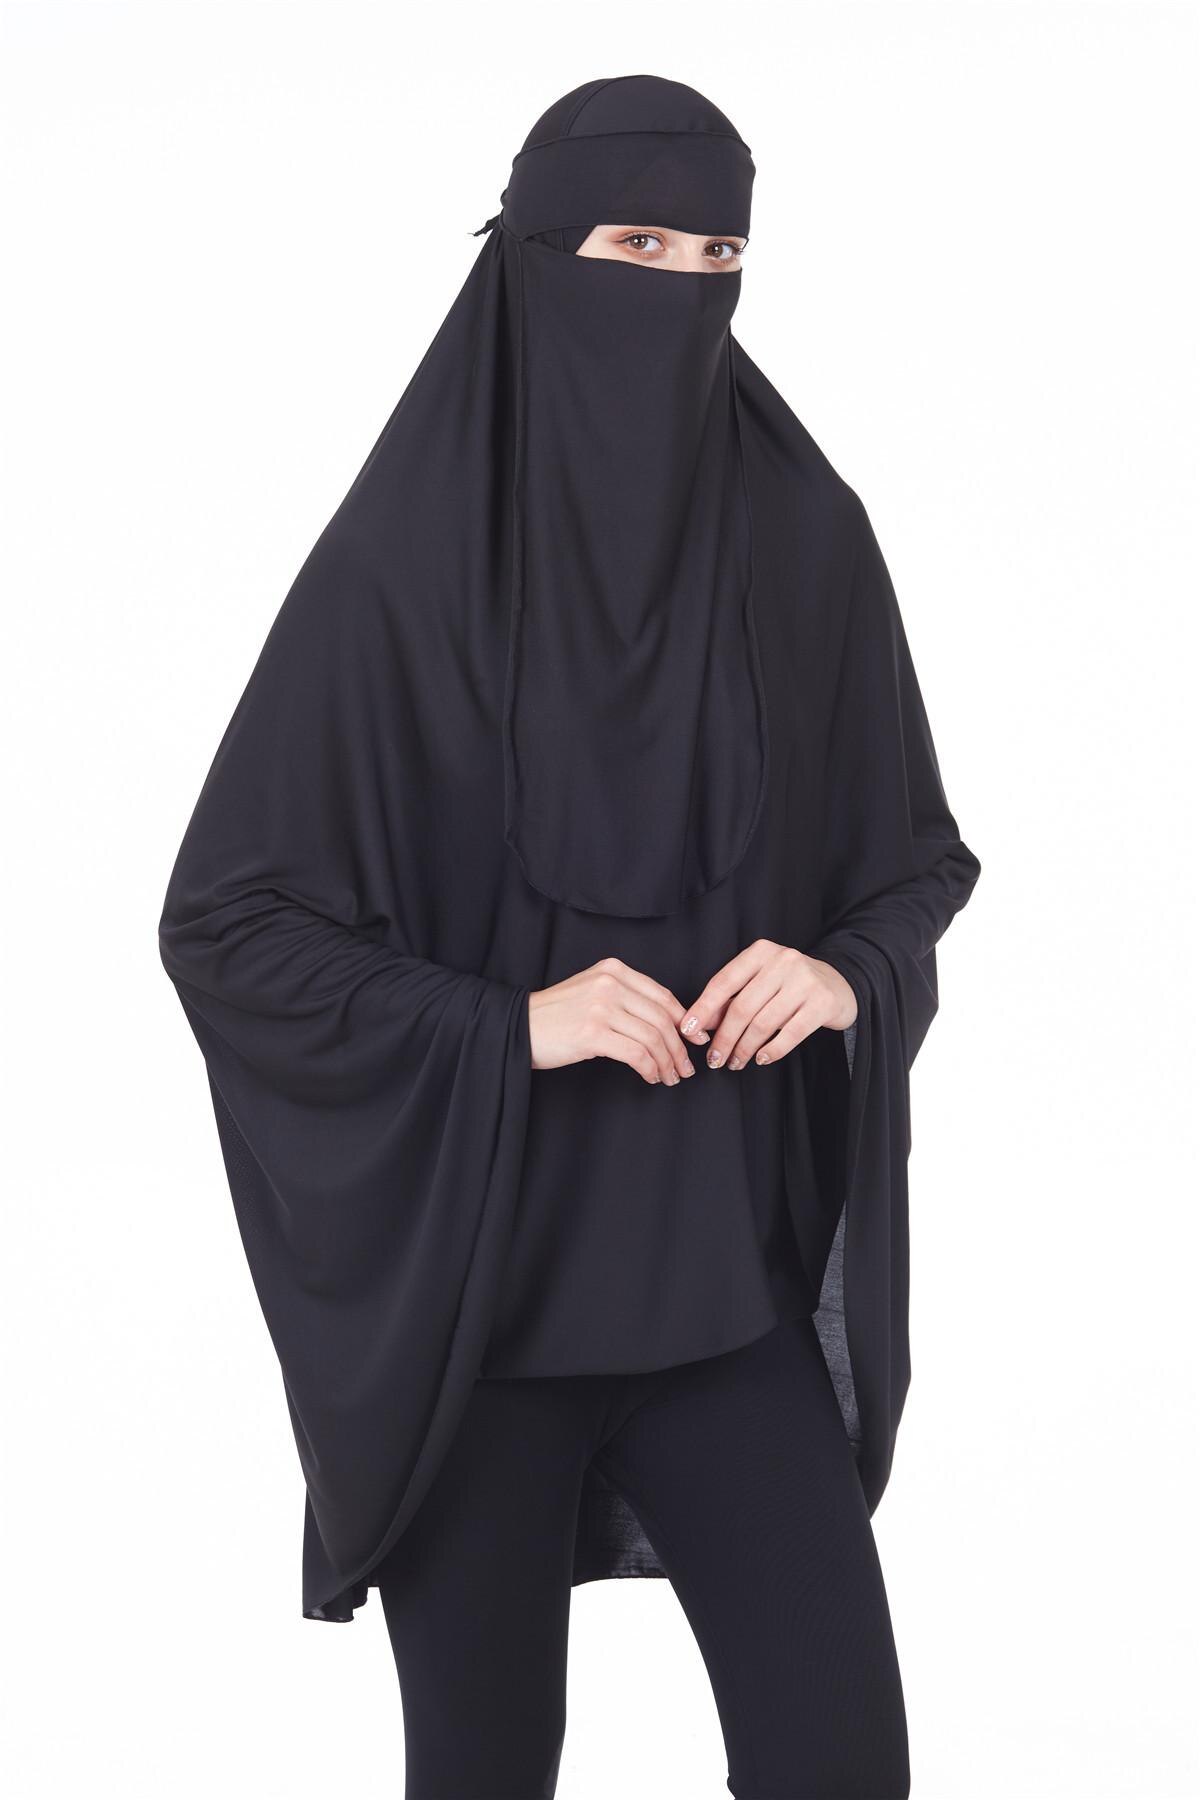 Niqab Long Khimar Hijab Veil Scarf Muslim Amira Prayer Abaya Islamic Overhead Arab 2PCS Prayer Garment +Veil Worship Service New